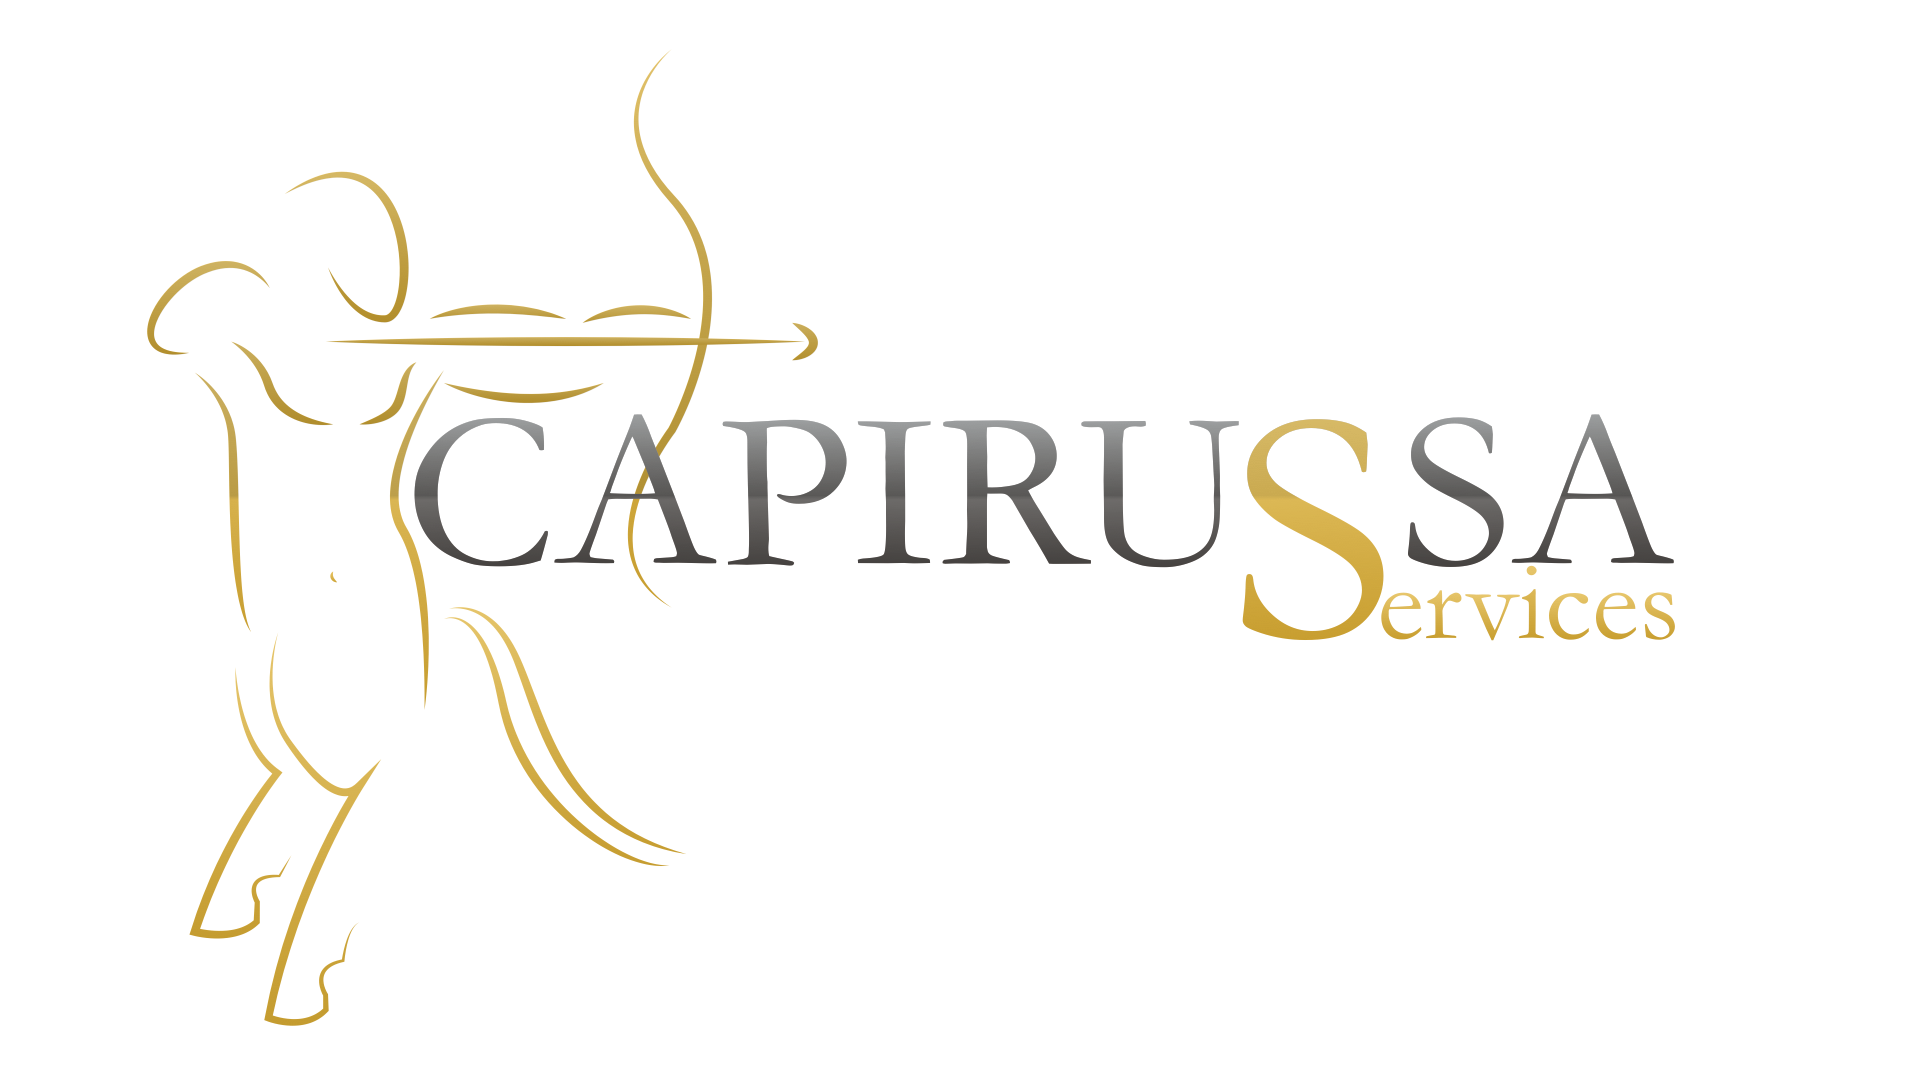 Capirussa Services